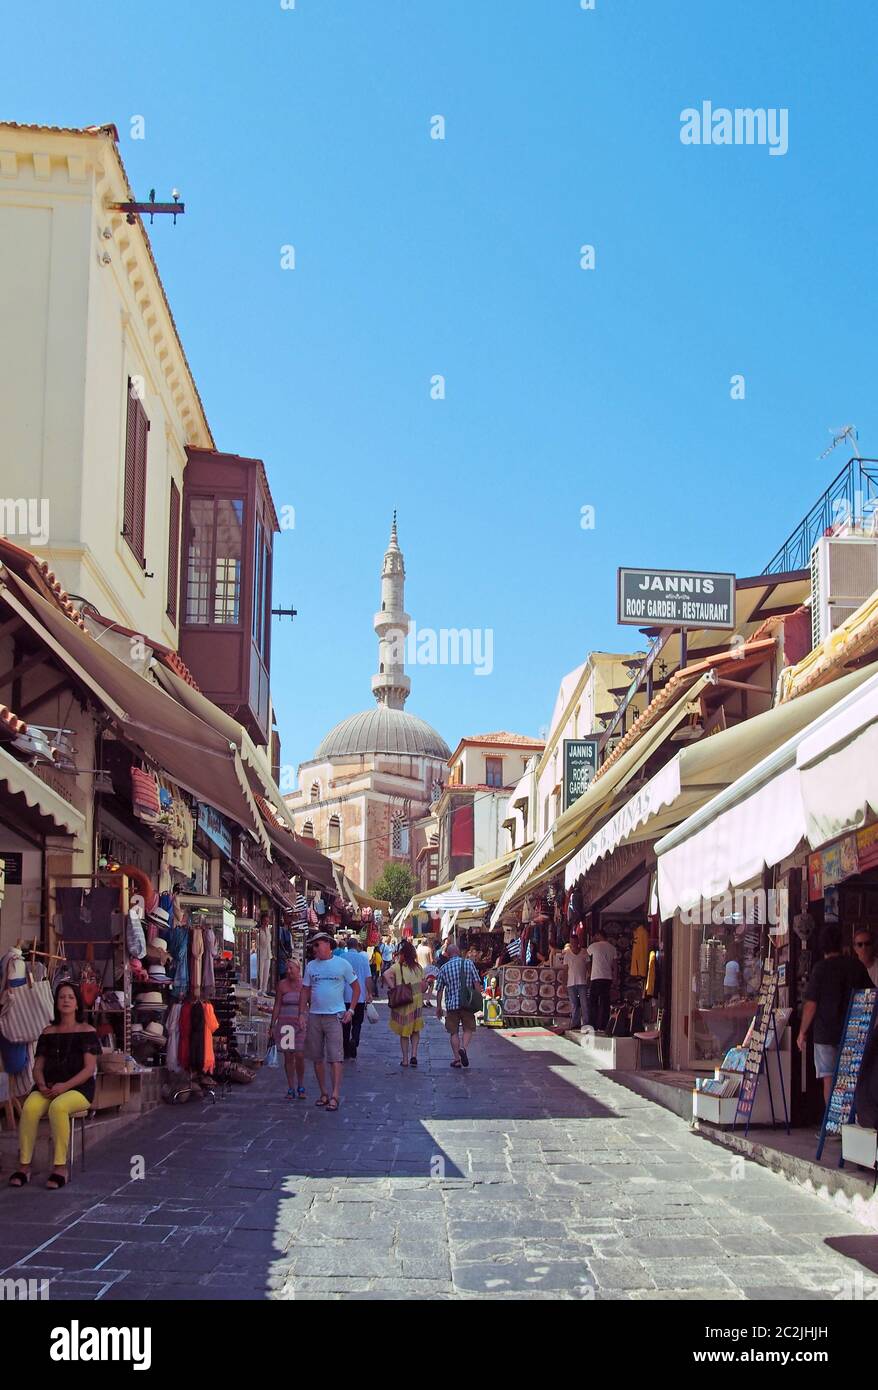 Touristen gehen eine Straße entlang, die mit Geschäften und Cafés in der Nähe der alten suleiman Moschee in rhodos Stadt gesäumt ist Stockfoto